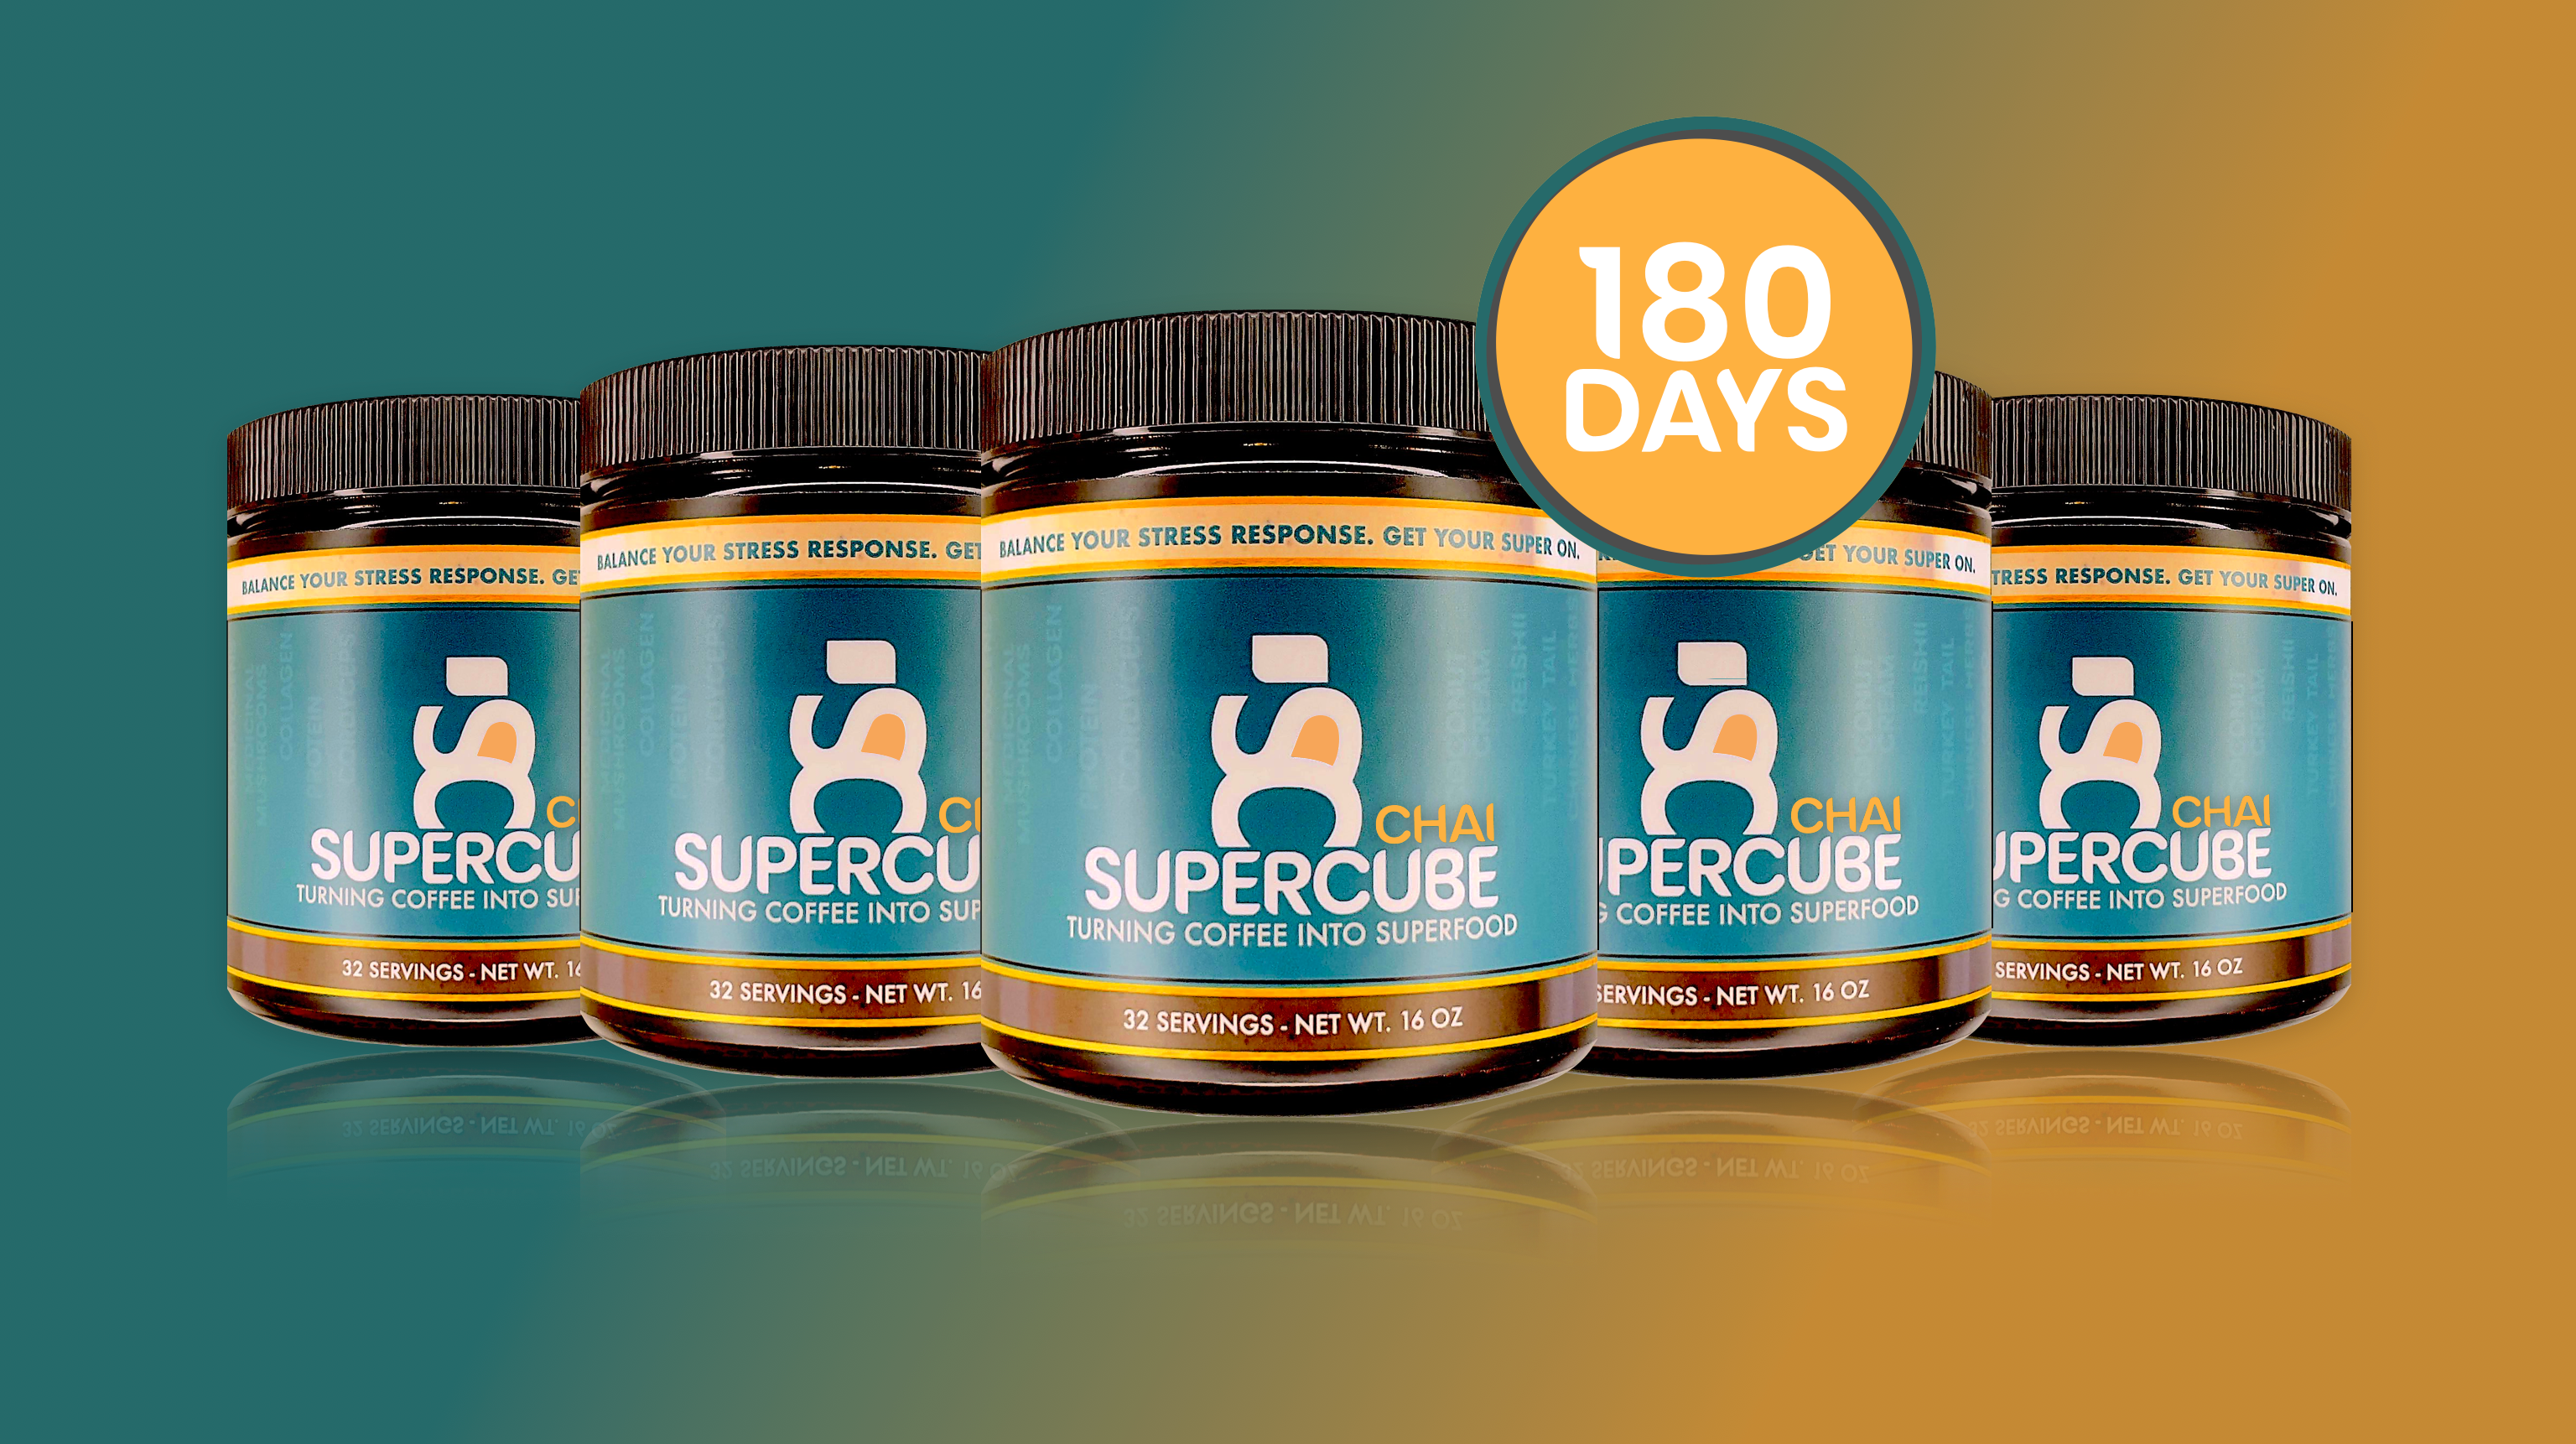 SUPERCUBE CHAI - 180 DAYS